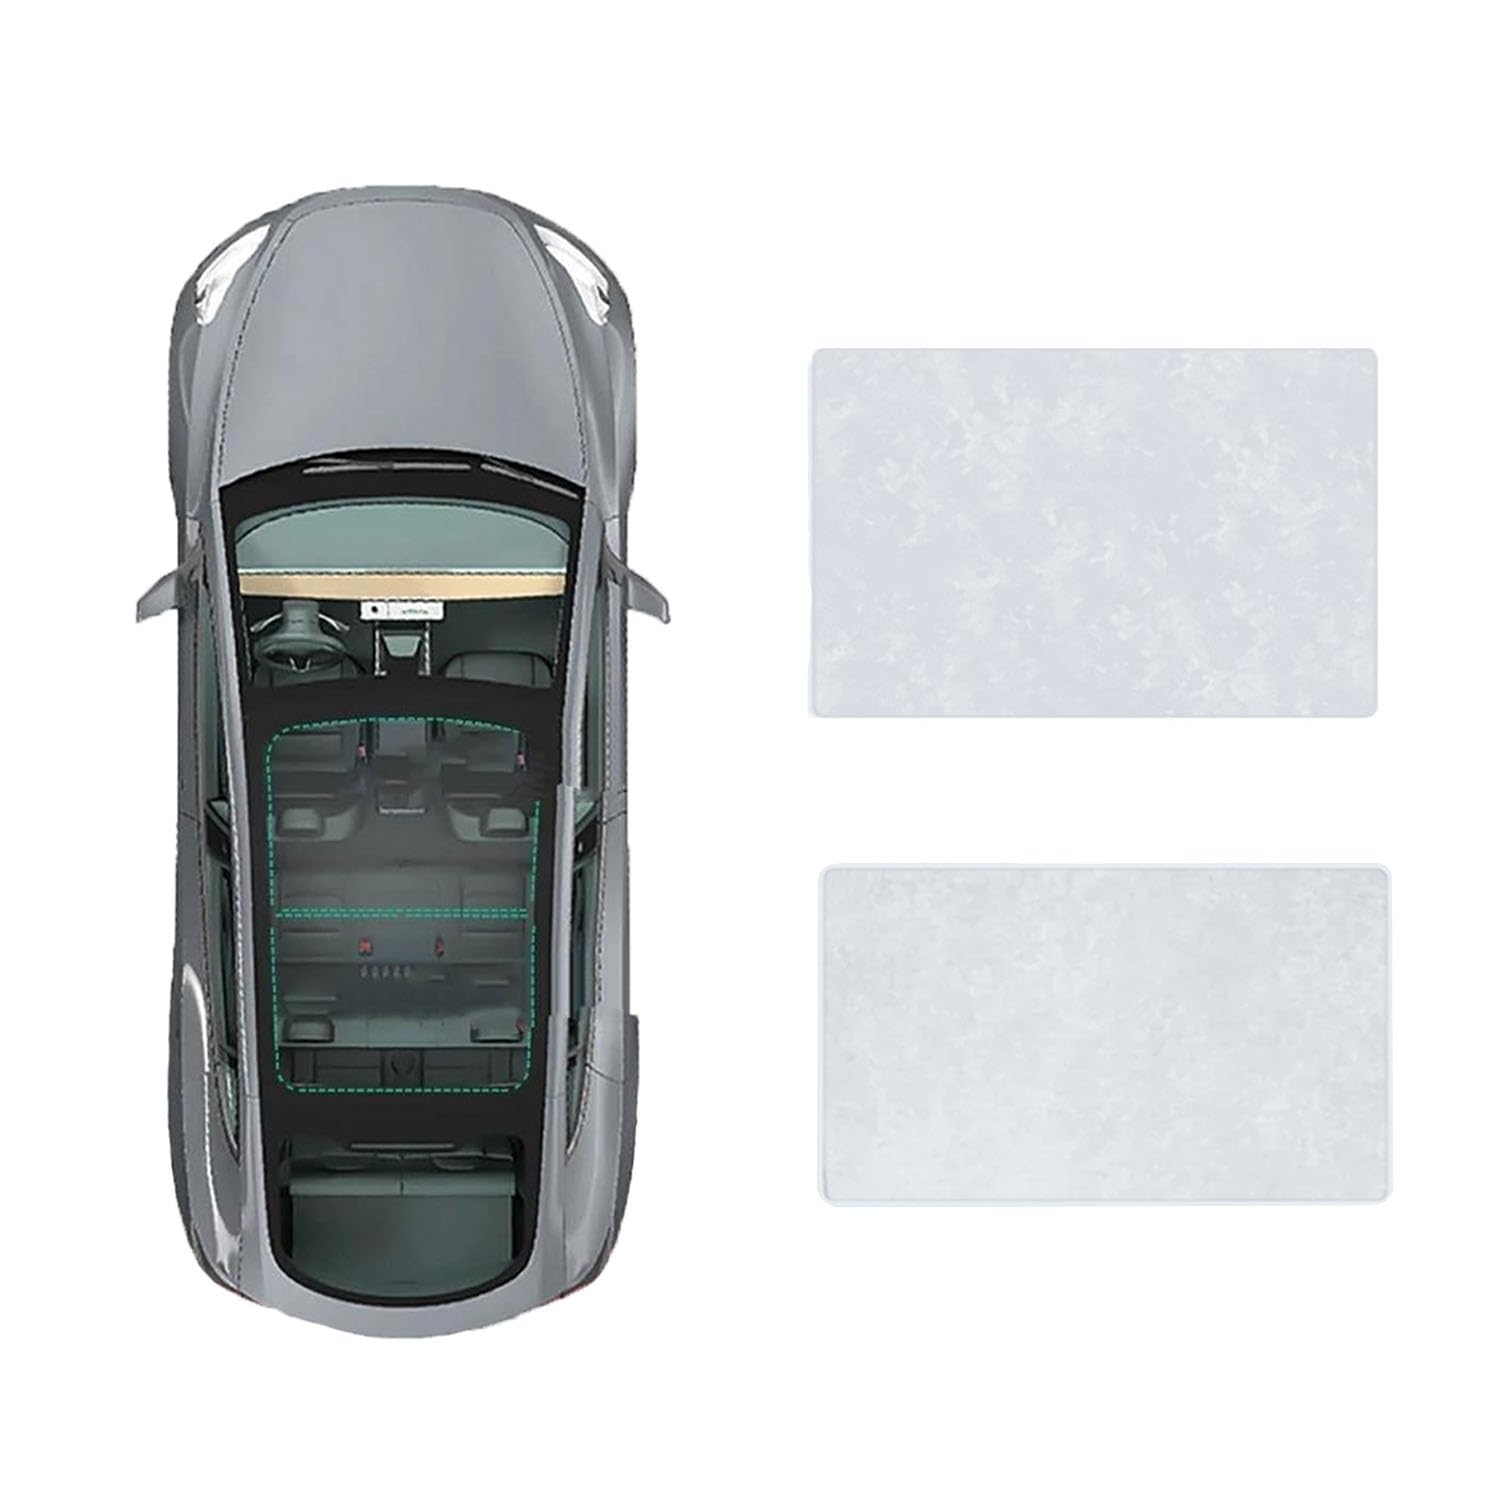 Auto-Schiebedach-Beschattung Für Toyota Camry 2018-2023,Auto Schiebedach Sonnenschutz Dachfenster Dach Wärme Isolierung Beschattung Innen,B-Gray White Suede von LiuROSE